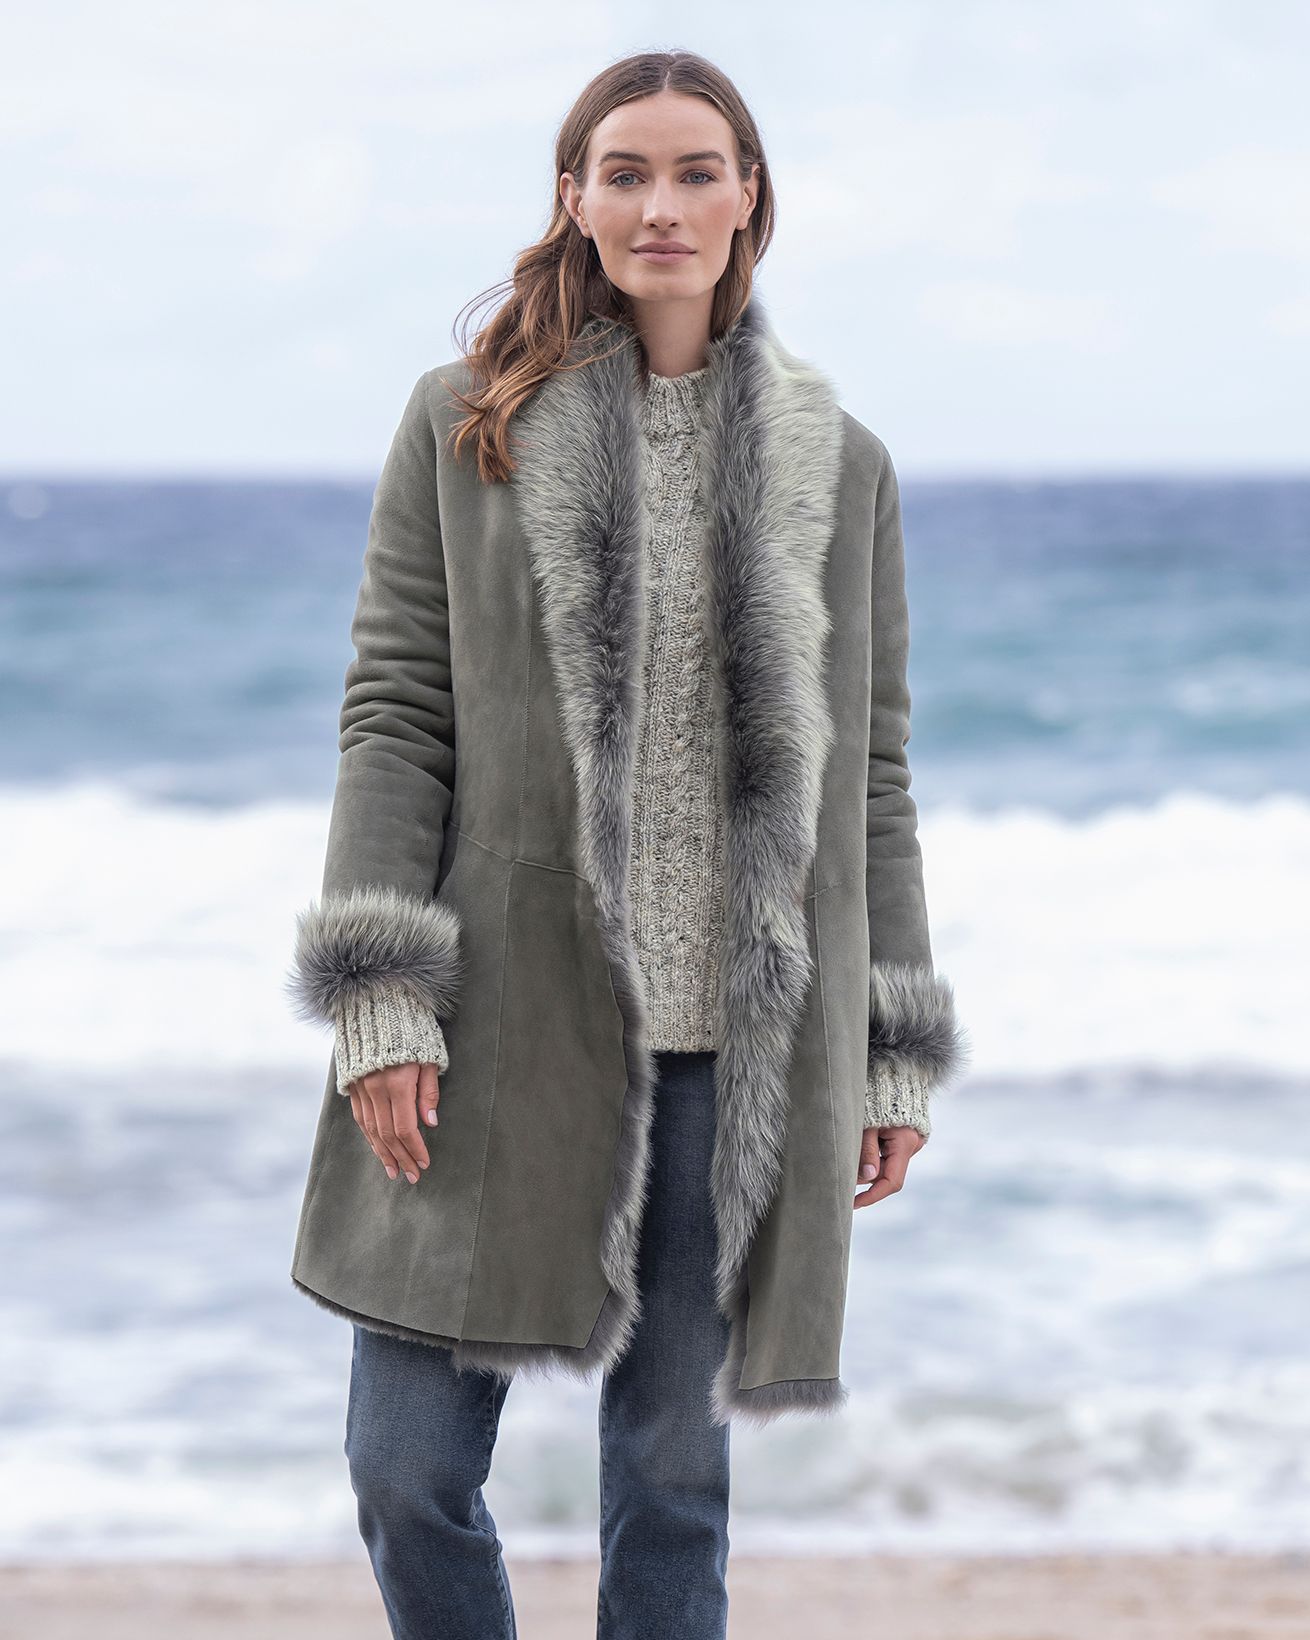 Paula Faux-Fur Long Cardigan Sweater